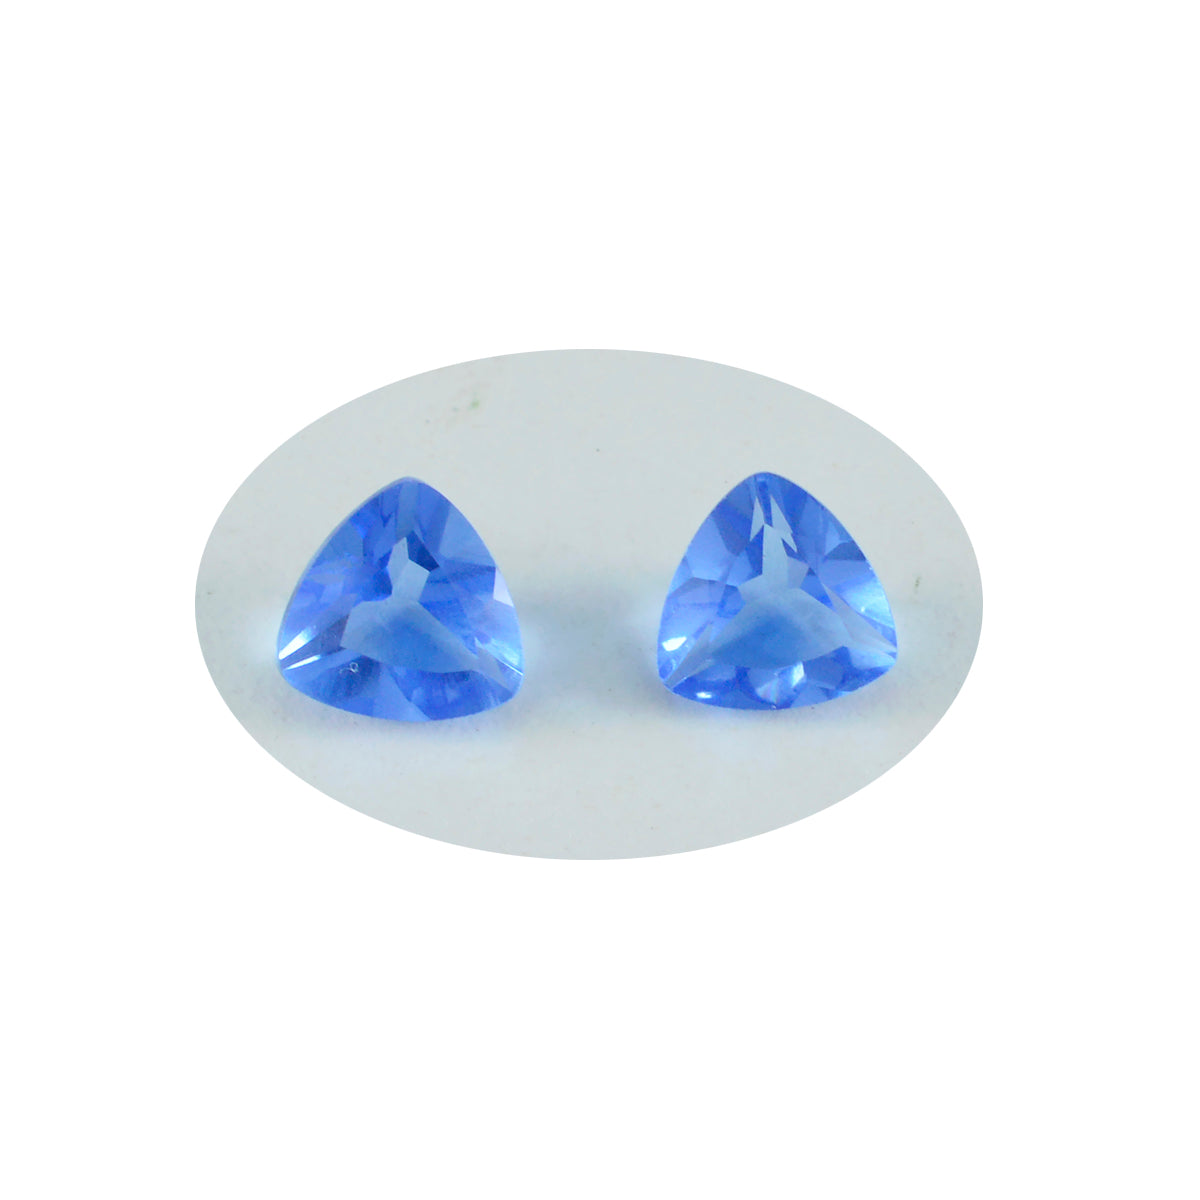 riyogems 1 шт. синий сапфир cz ограненный 11x11 мм форма триллиона камень потрясающего качества